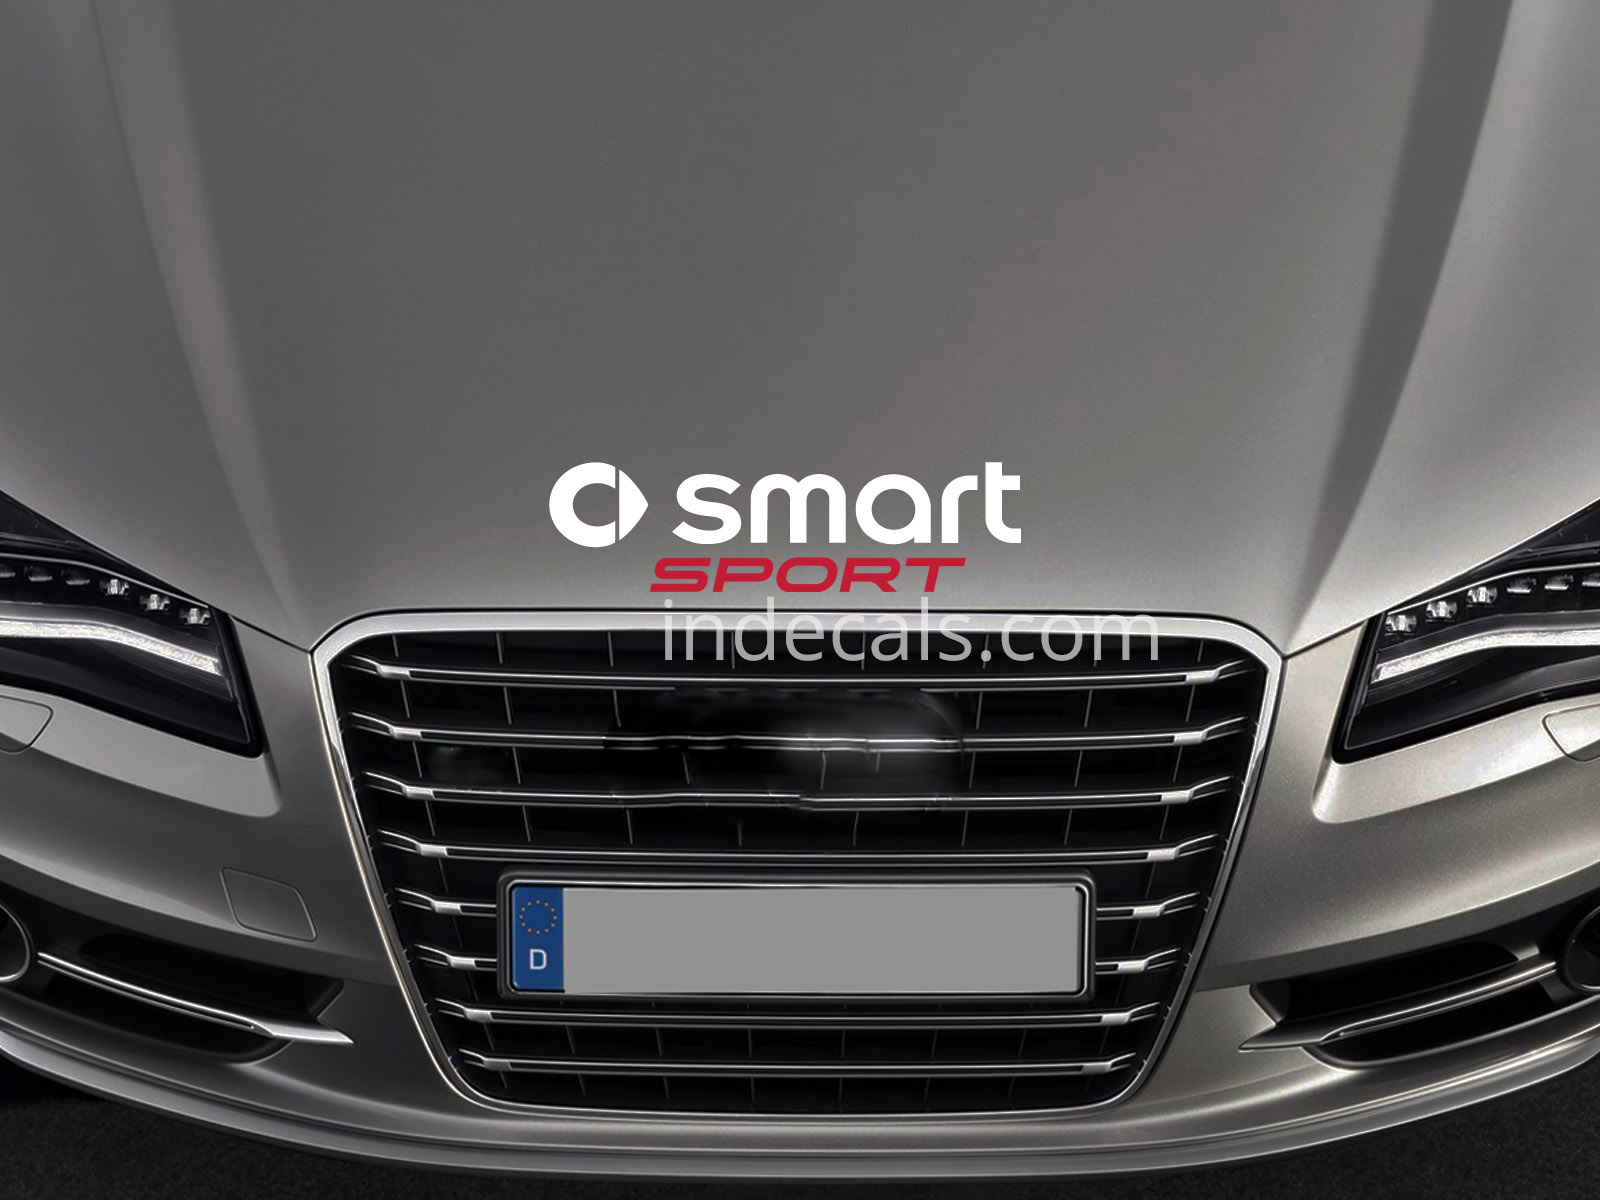 1 x Smart Sport Sticker for Bonnet - White & Red